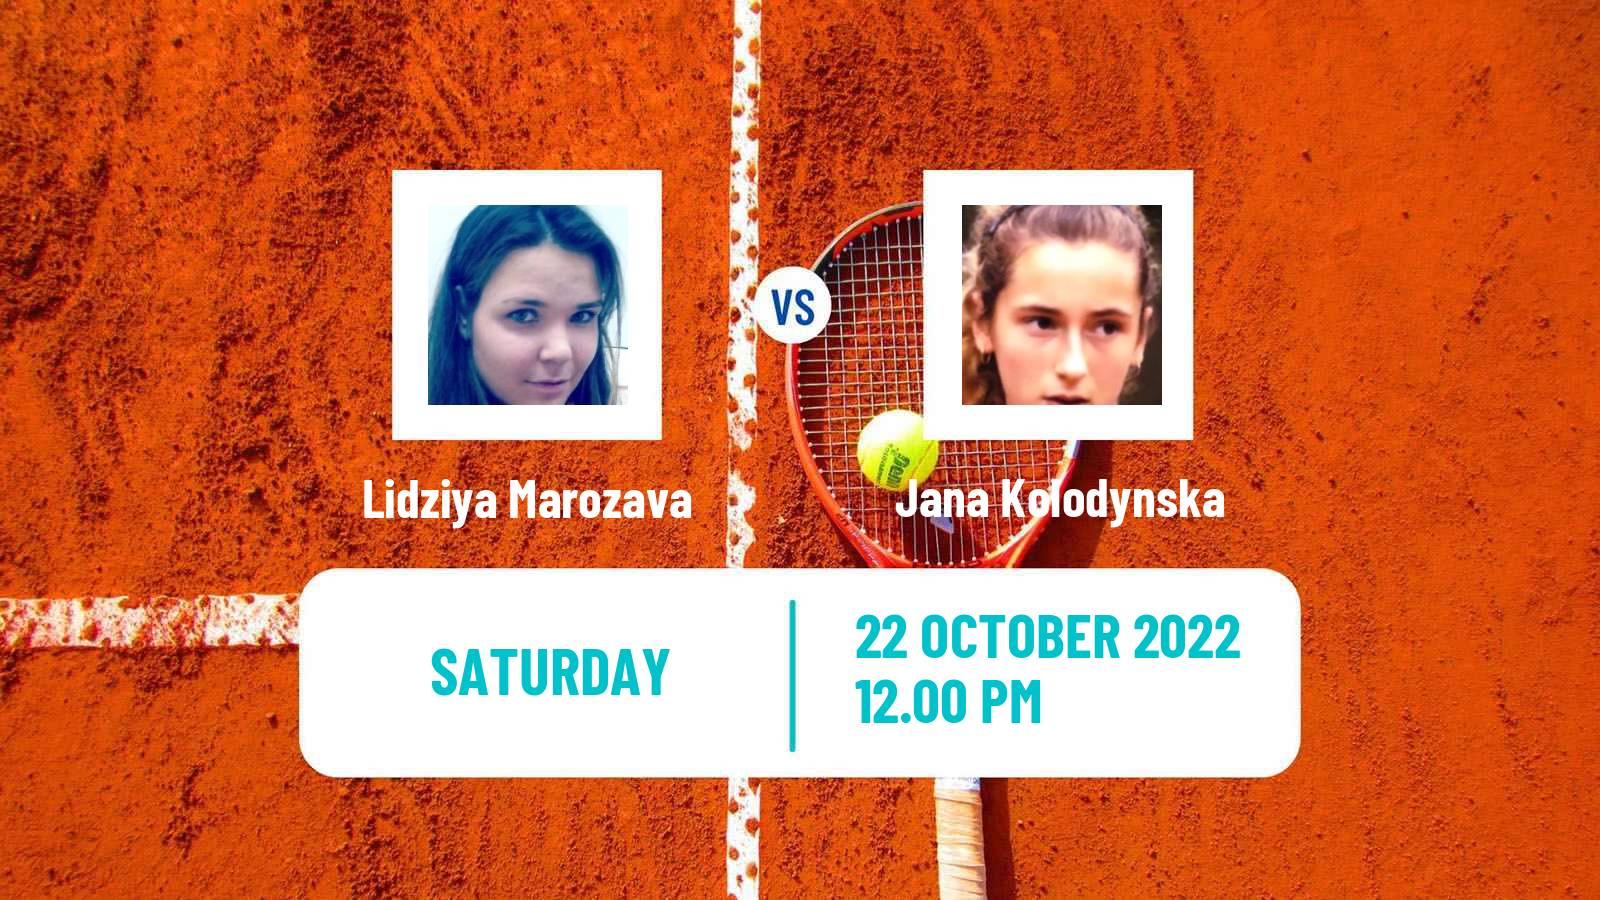 Tennis ATP Challenger Lidziya Marozava - Jana Kolodynska